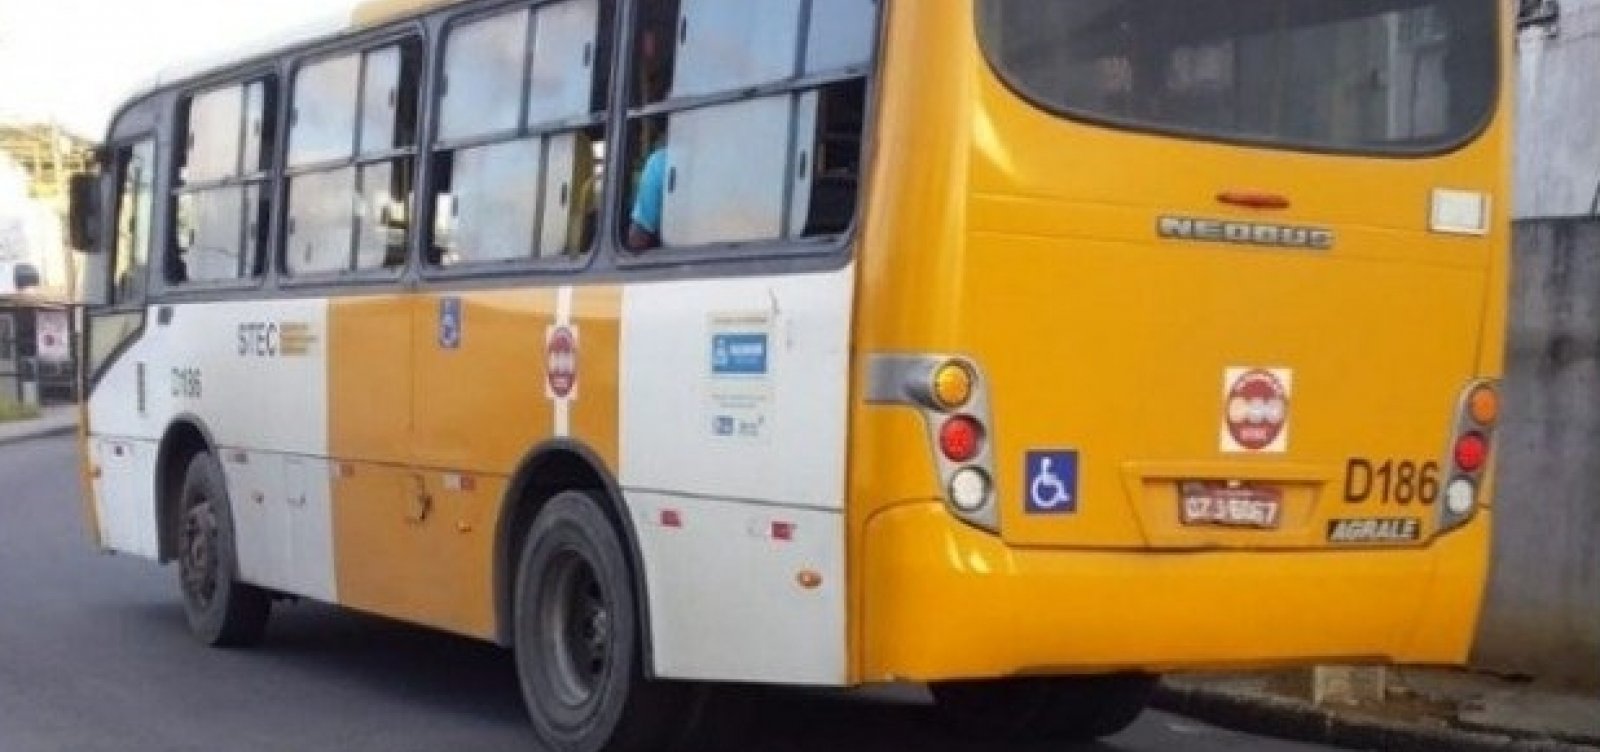 Com paralisação dos rodoviários, prefeitura monta operação com ônibus 'amarelinhos'